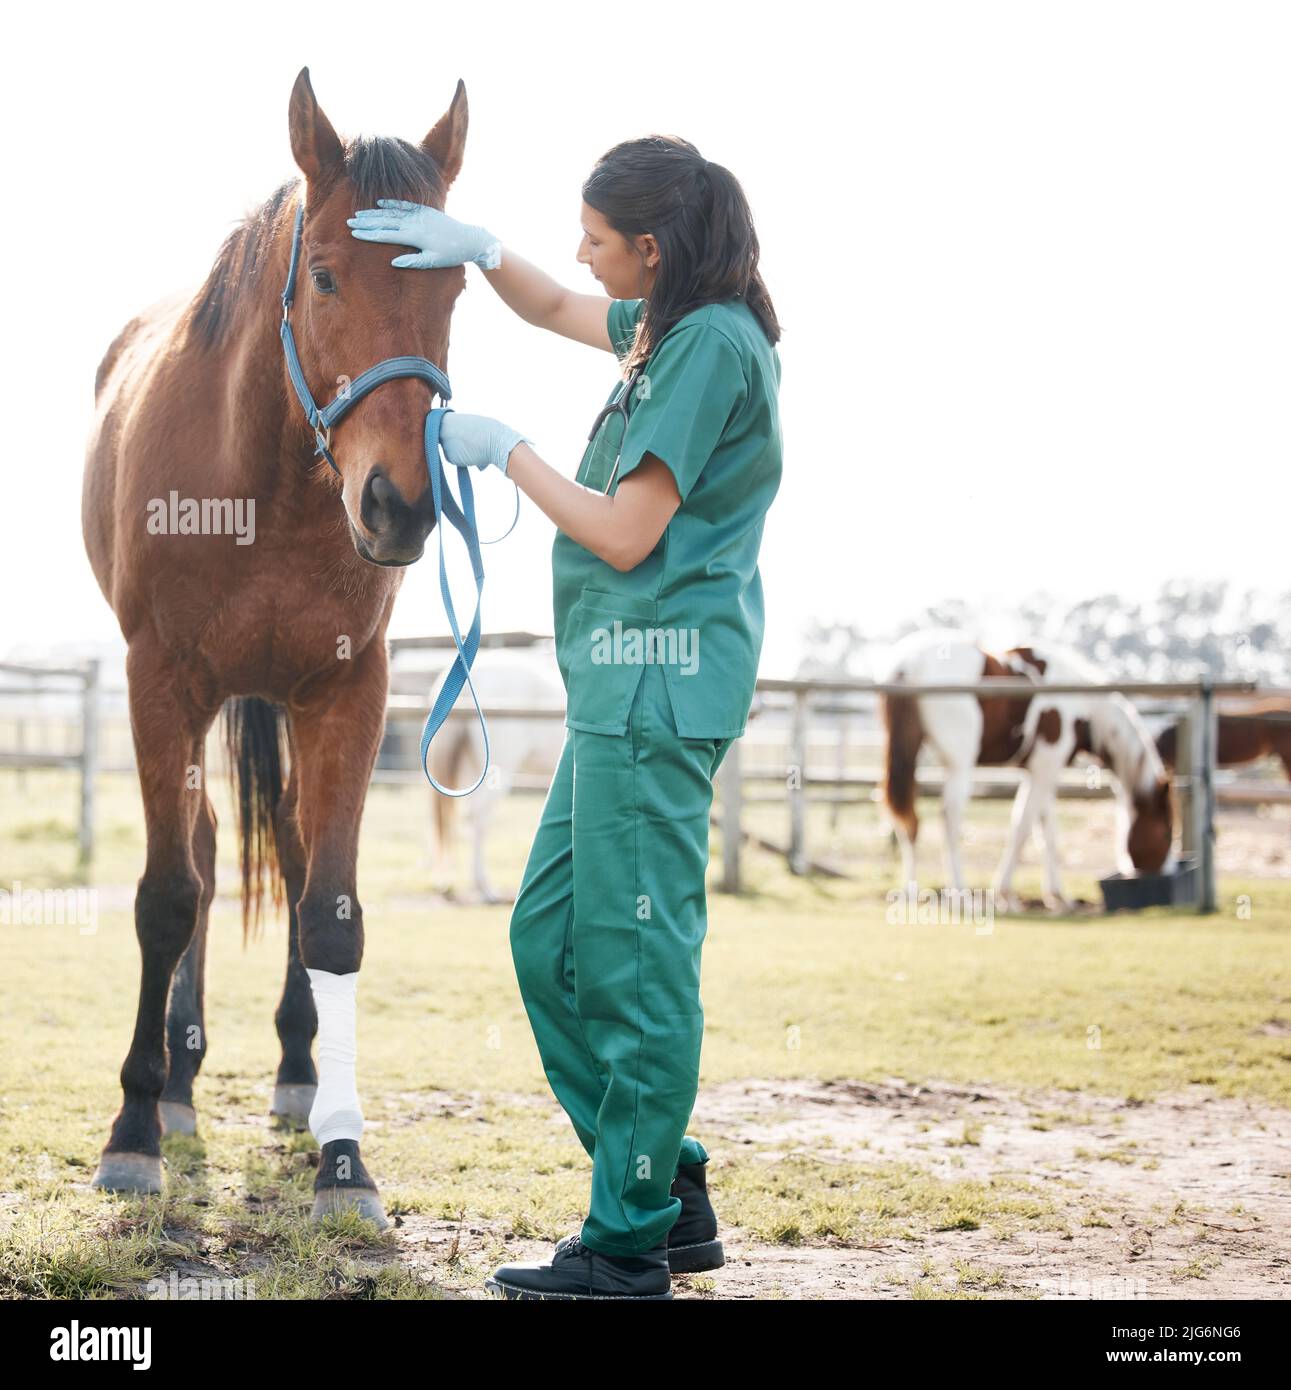 Ich habe mich in letzter Zeit ein wenig unter dem Wetter gefühlt. Ganzkörperaufnahme eines jungen Tierarztes, der allein steht und sich auf einem Bauernhof um ein Pferd kümmert. Stockfoto